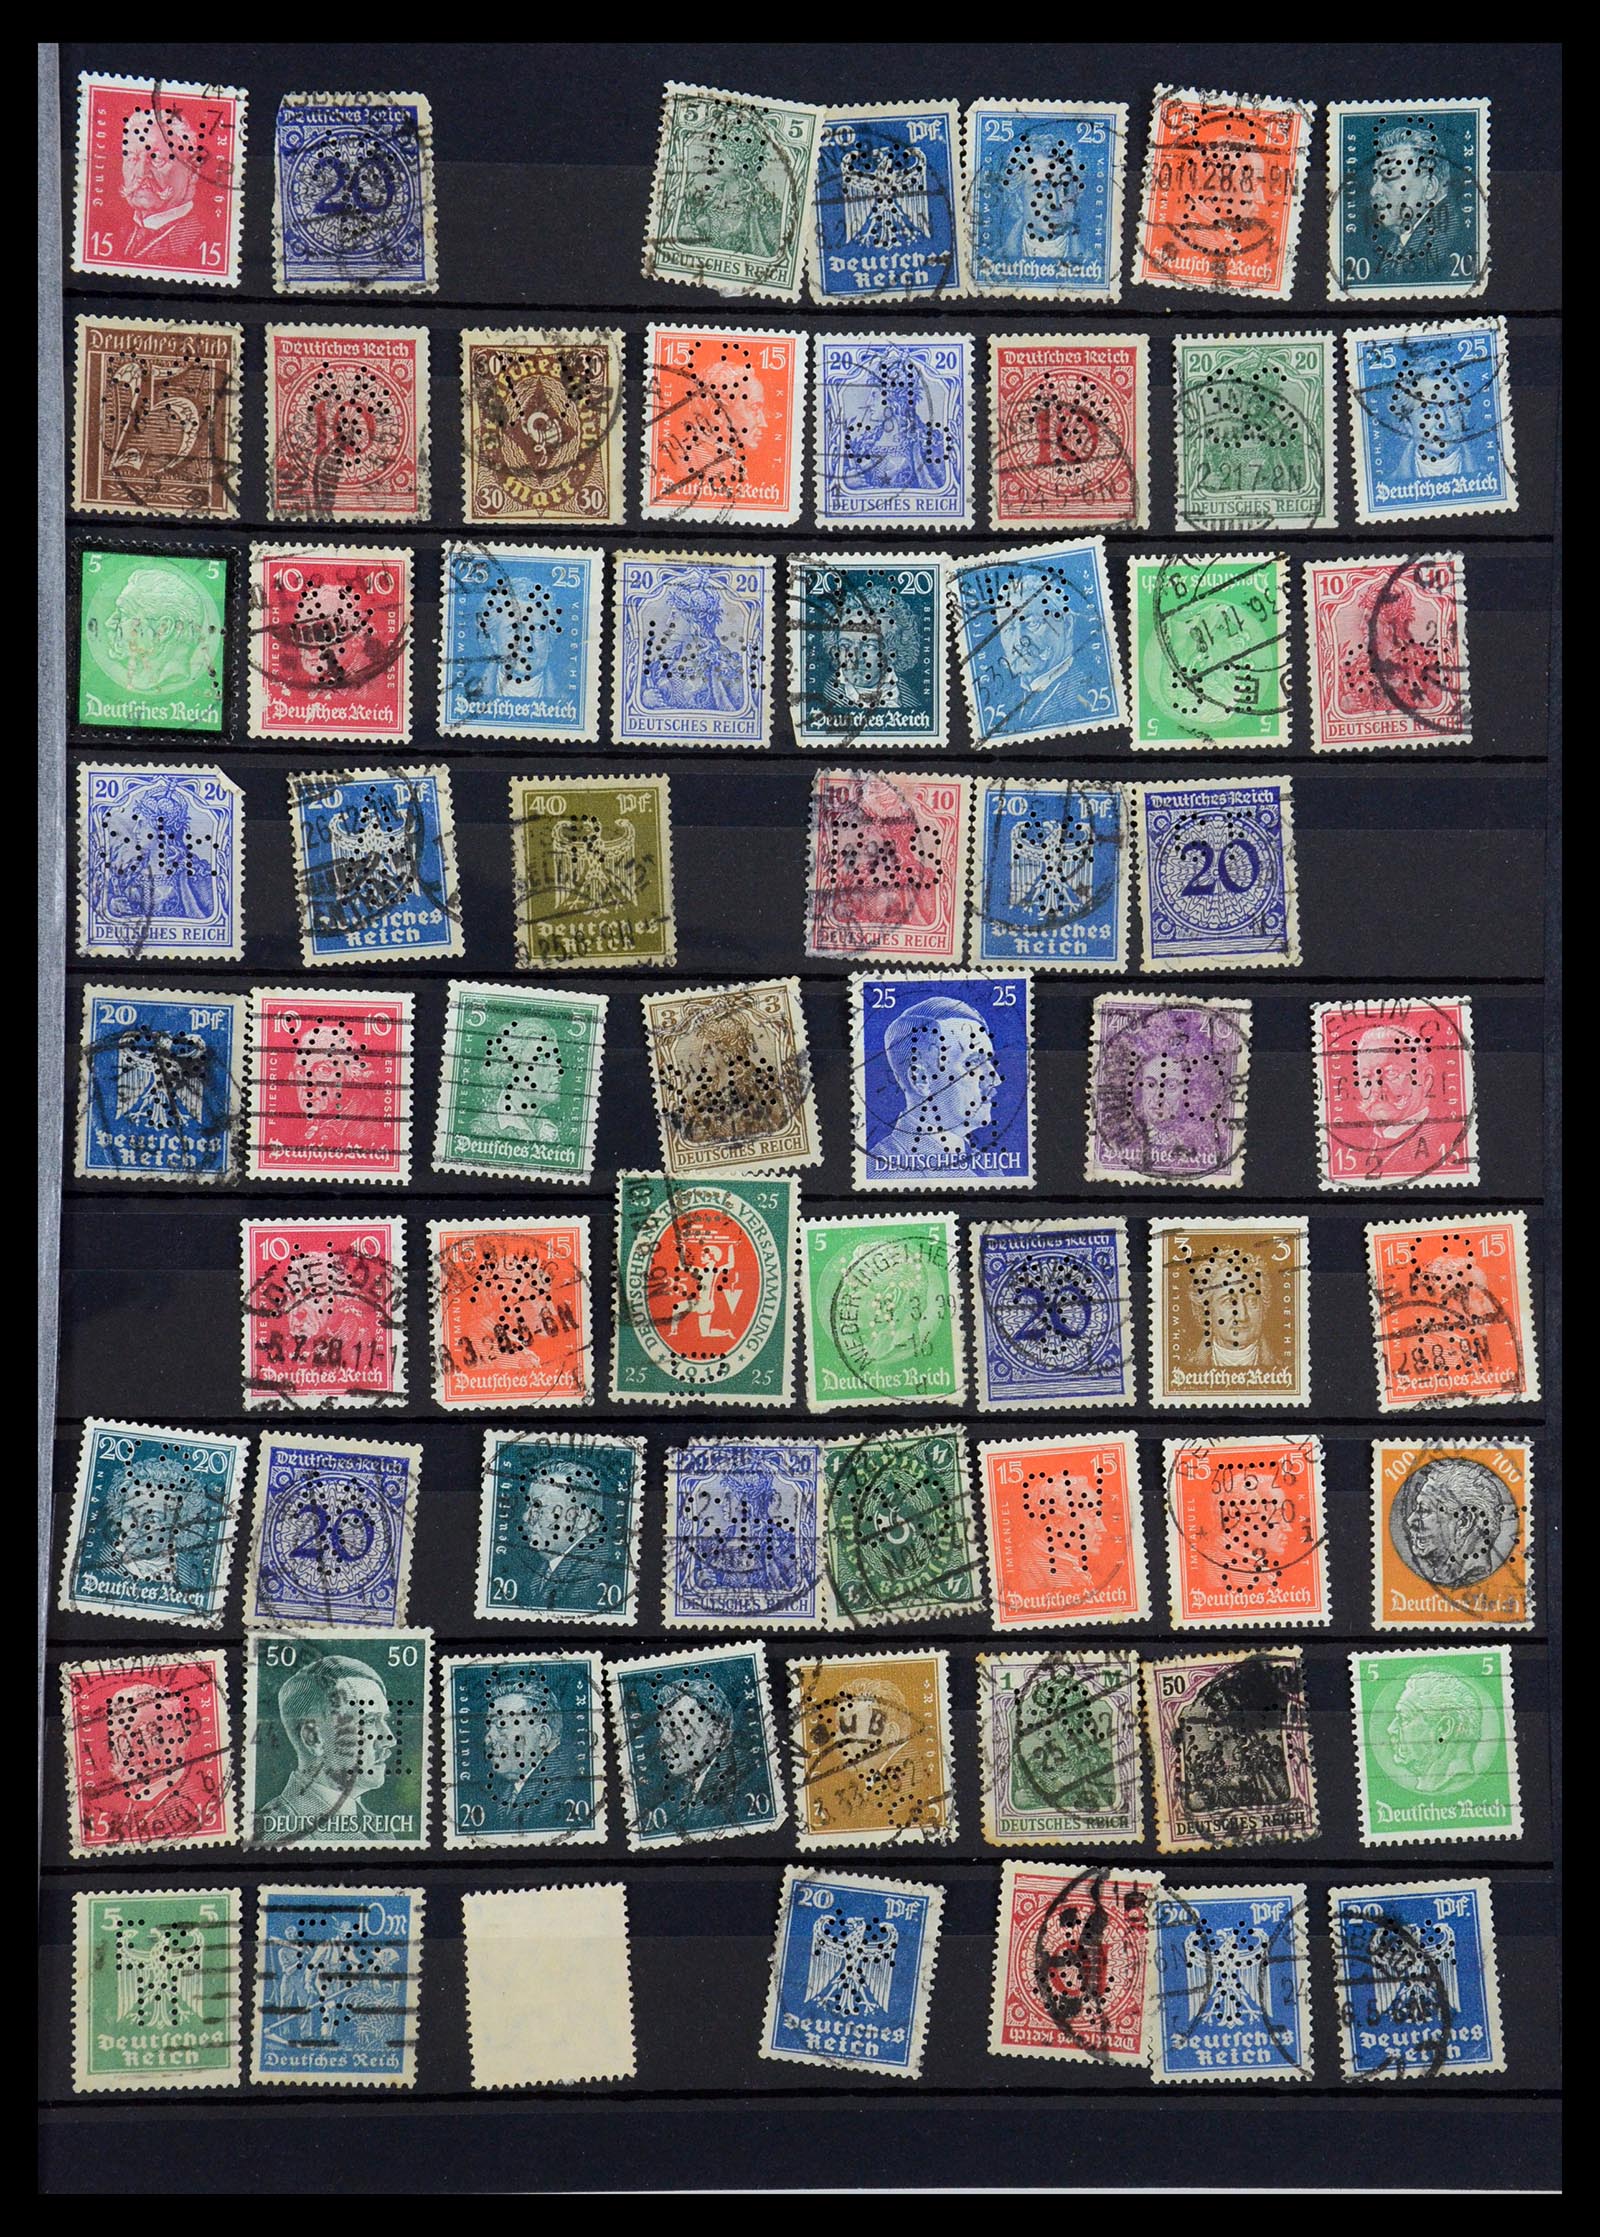 35183 005 - Stamp Collection 35183 German Reich perfins 1880-1945.